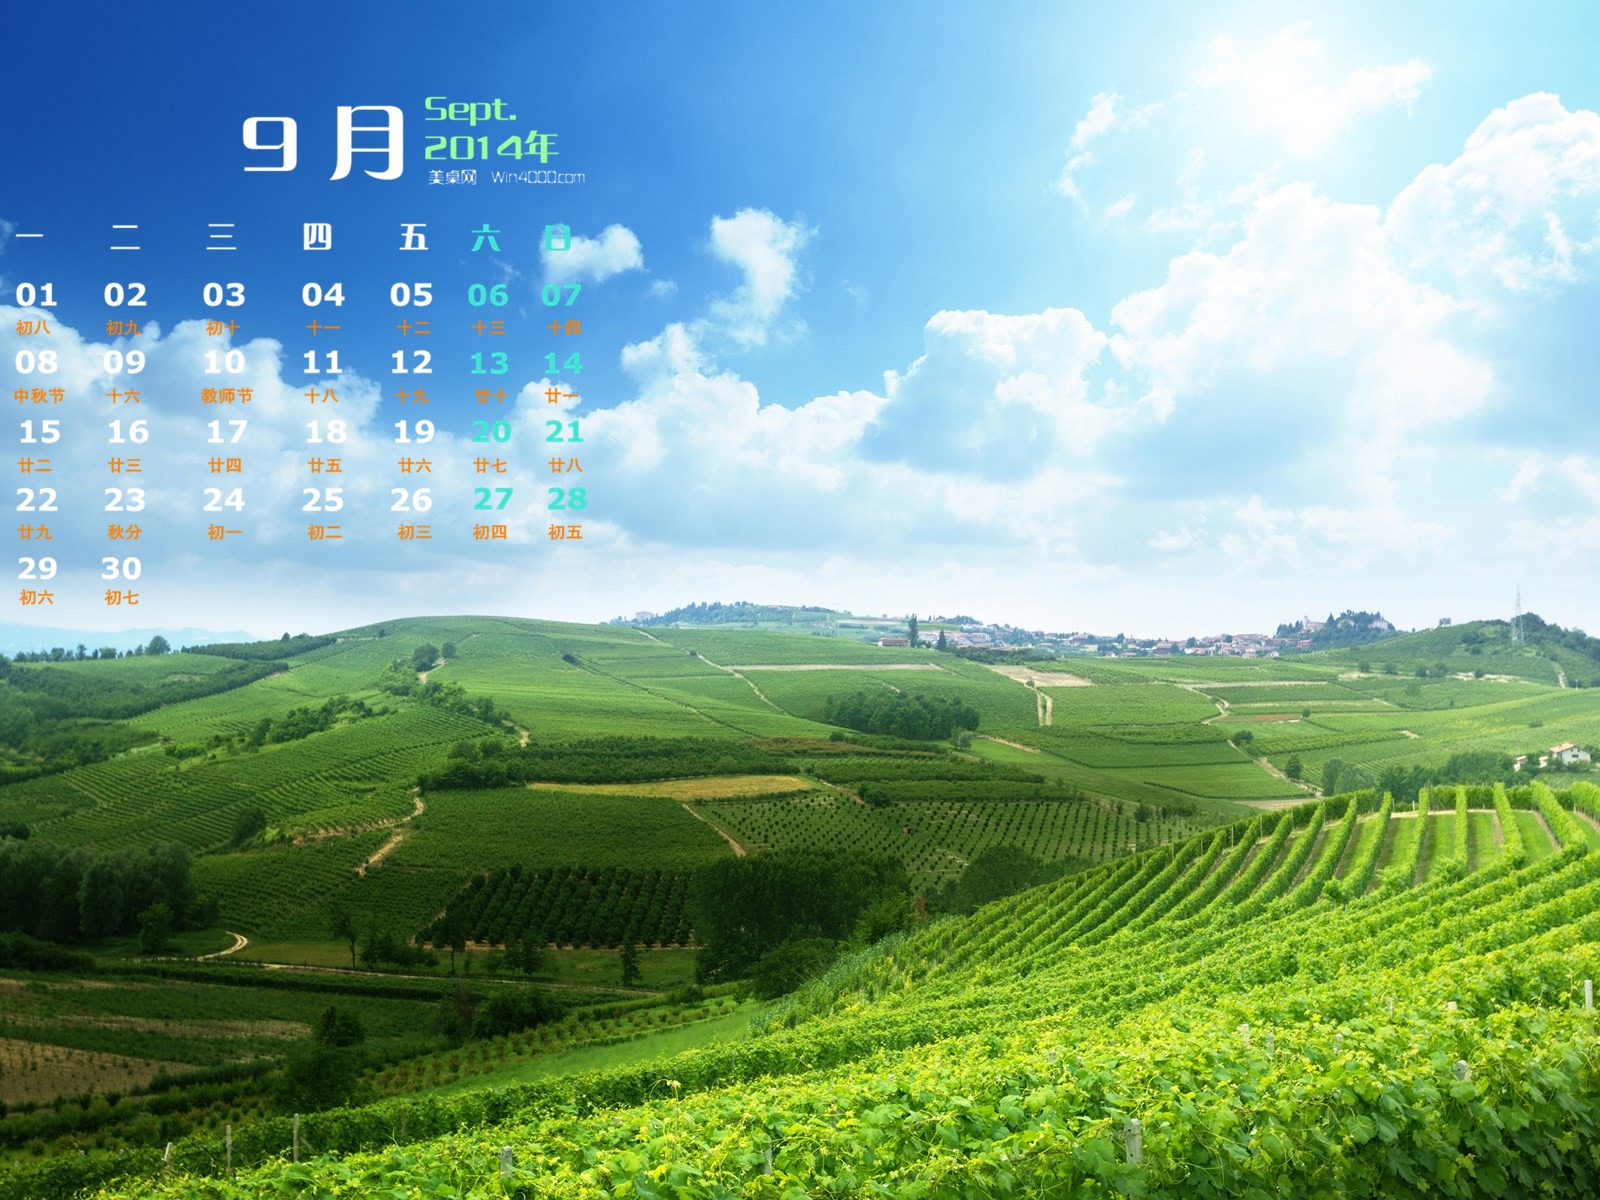 09 2014 wallpaper Calendario (2) #8 - 1600x1200